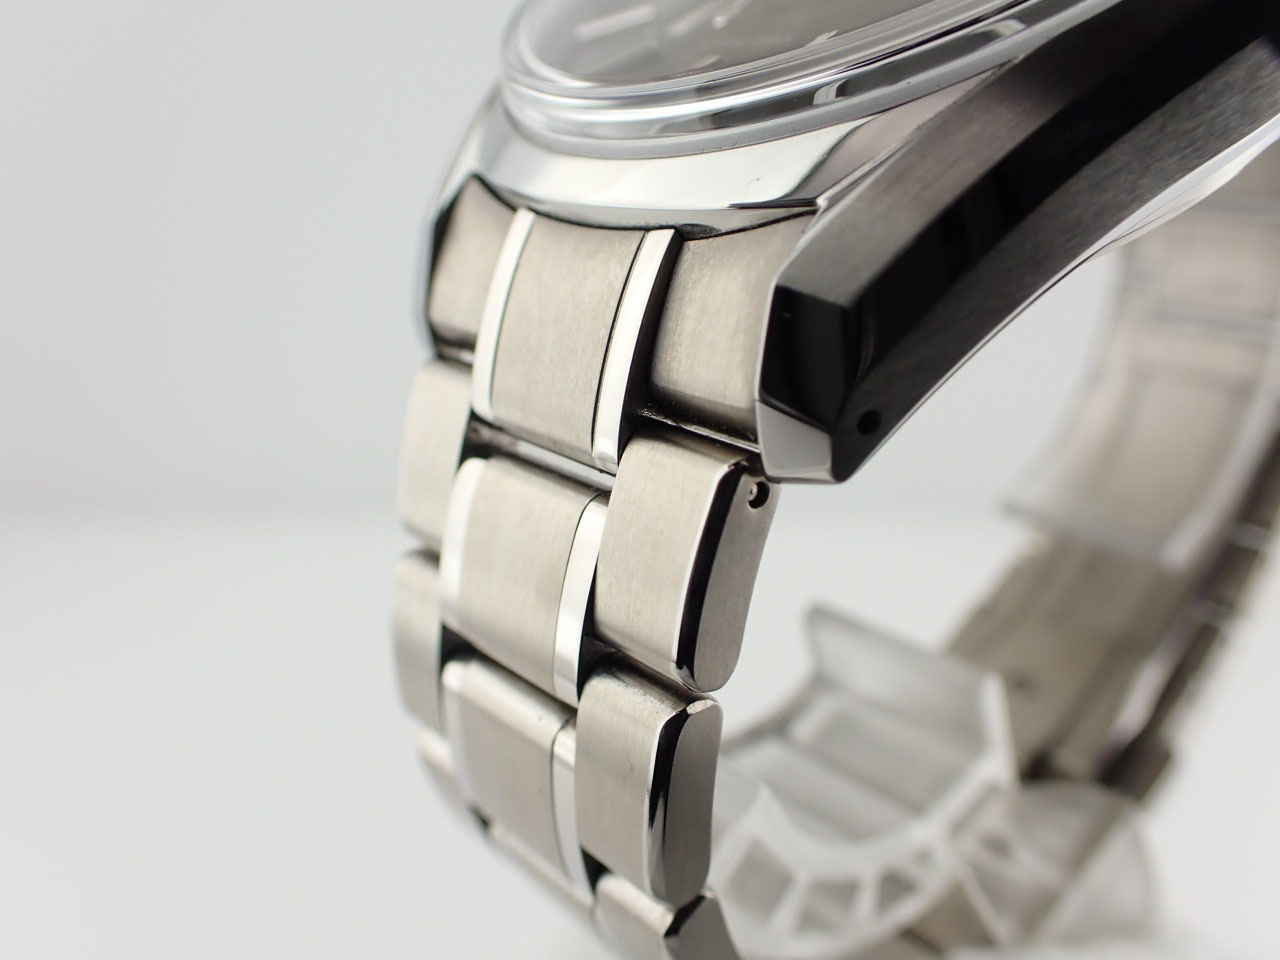 グランドセイコー Grand Seiko SBGA457 ブラック メンズ 腕時計